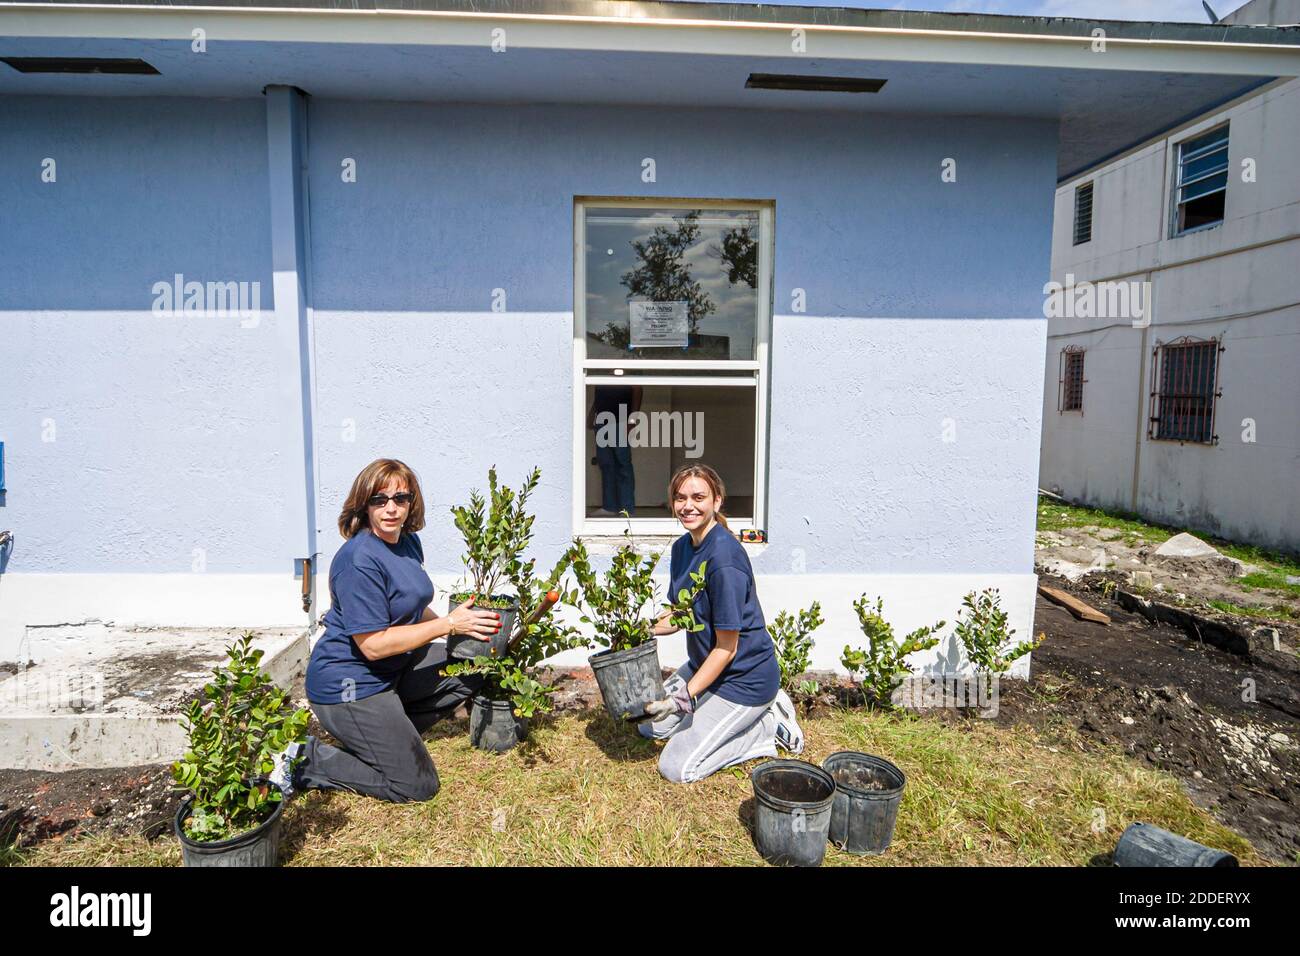 Miami Florida, Overtown Habitat for Humanity, Freiwillige beim Bau eines neuen Hauses mit niedrigem Einkommen in der Innenstadt, beim Landschaftsbau von Sträuchern, Bäumen Hispani Stockfoto